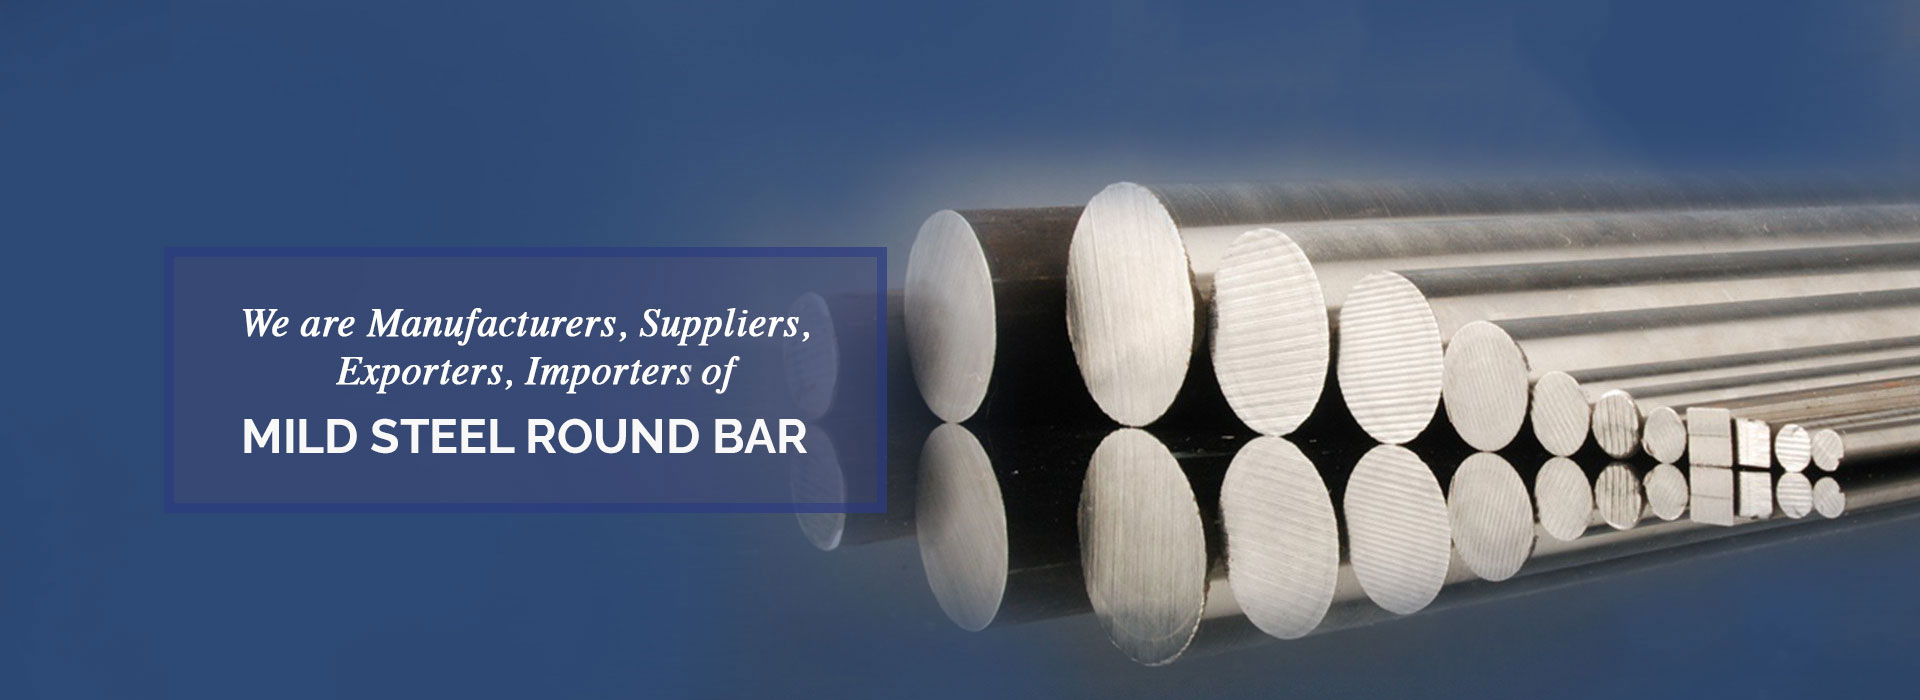 Mild Steel Round Bar Manufacturers in Dubai